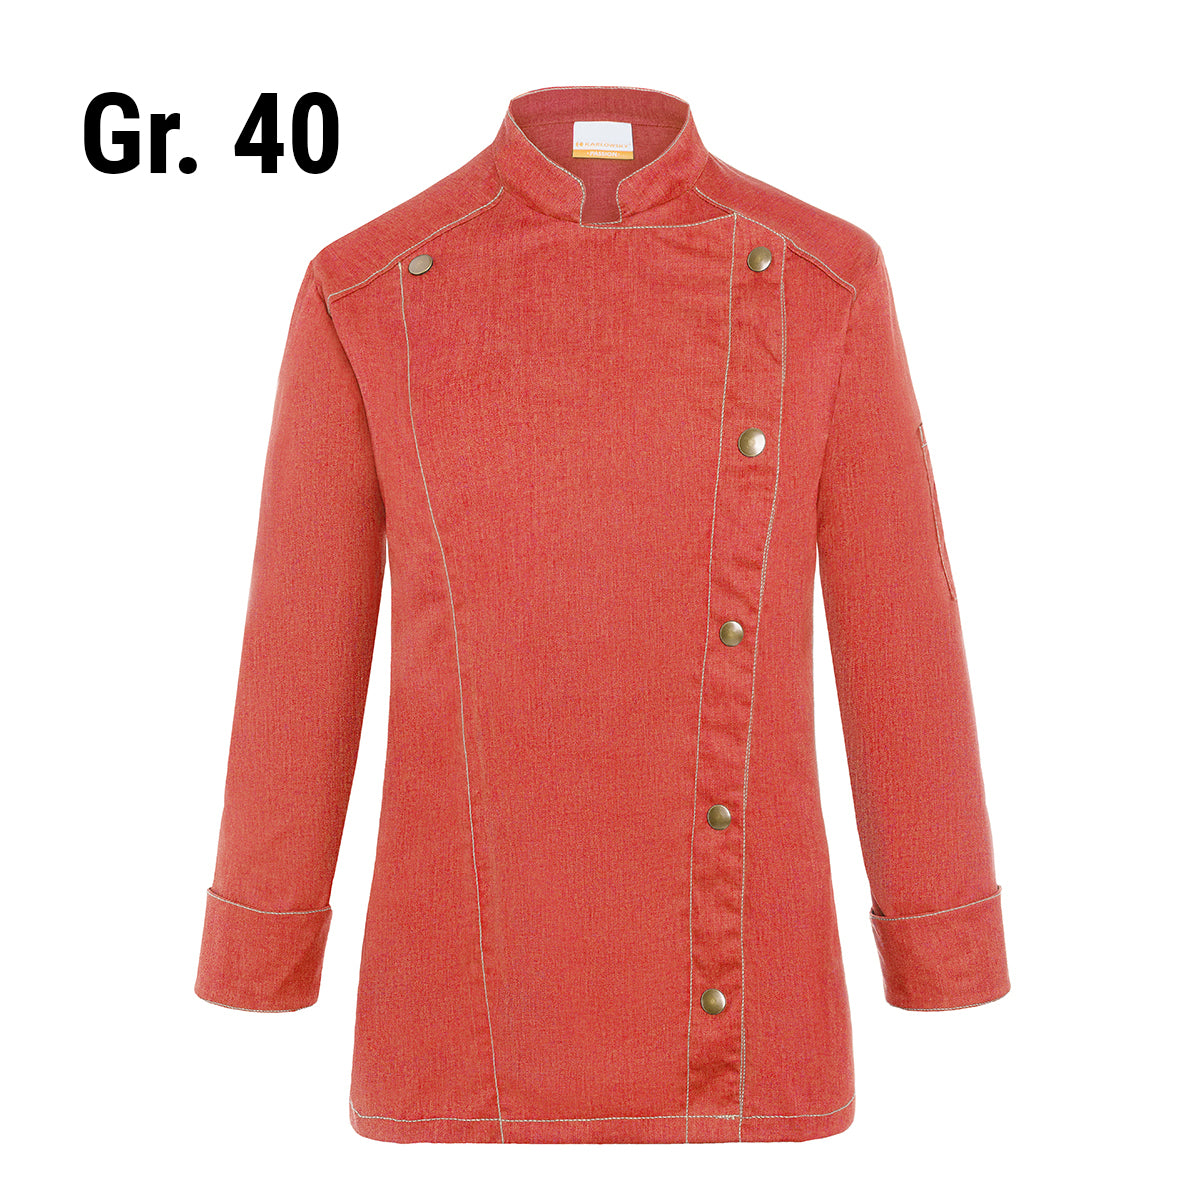 (6 stk) Karlowsky DAME kokkejakke i jeans-stil - vintage rød - str. 40